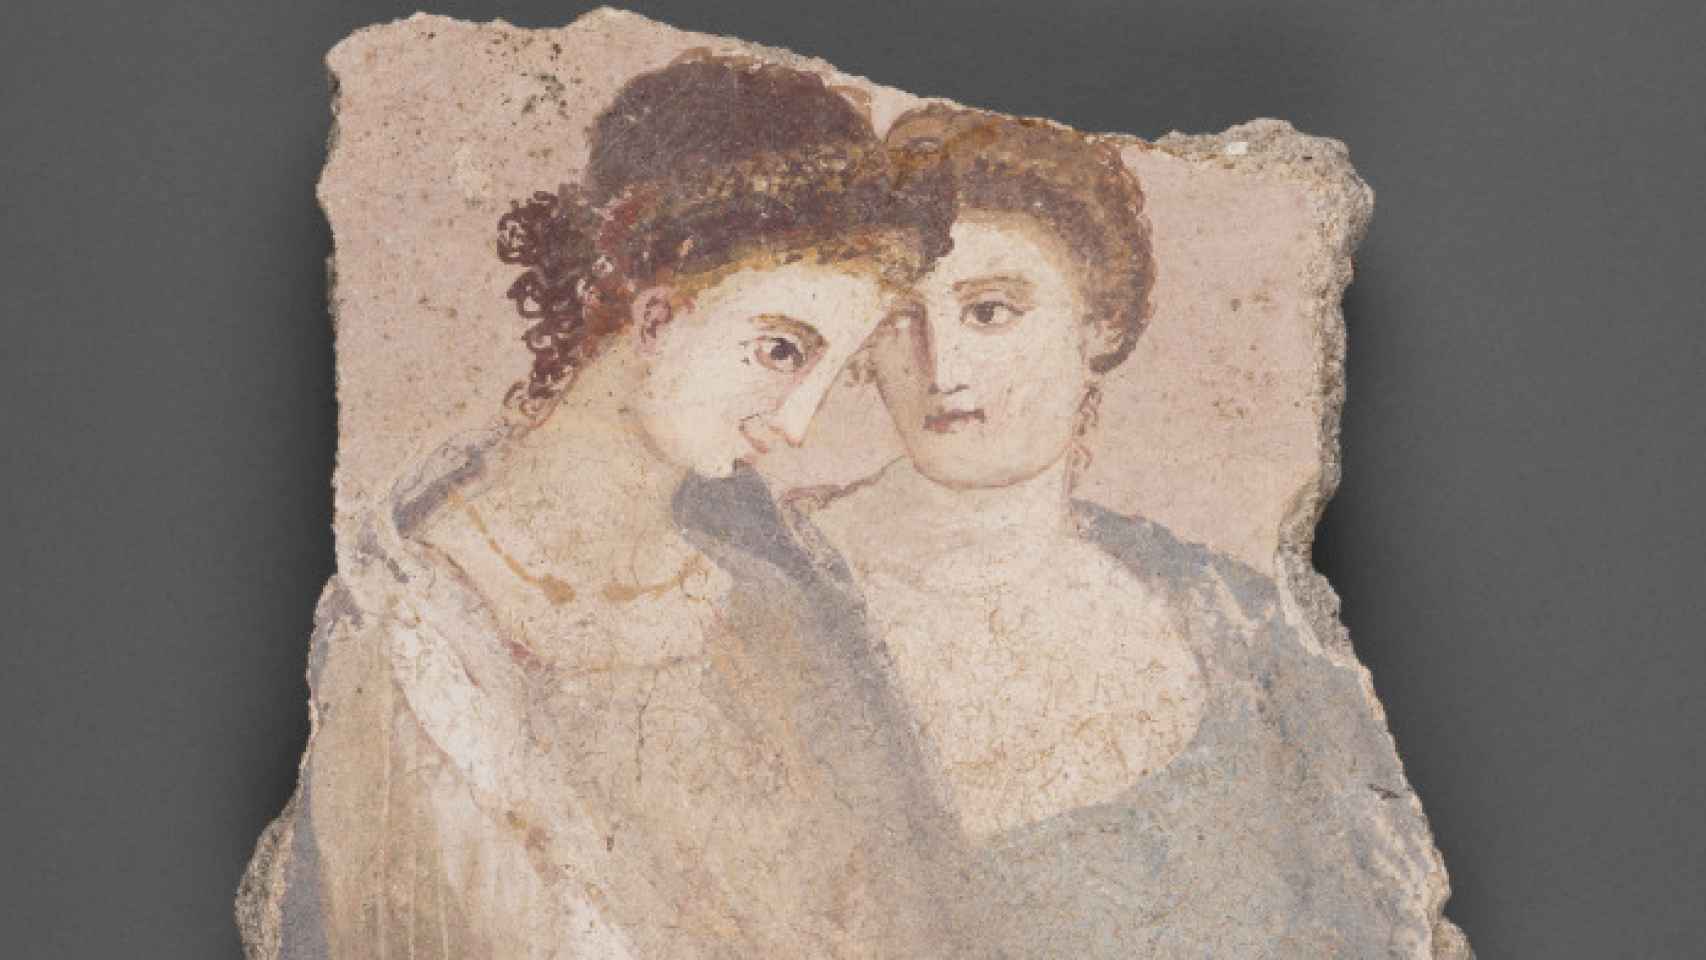 Fresco romano del siglo I d.C. que representa a dos mujeres.